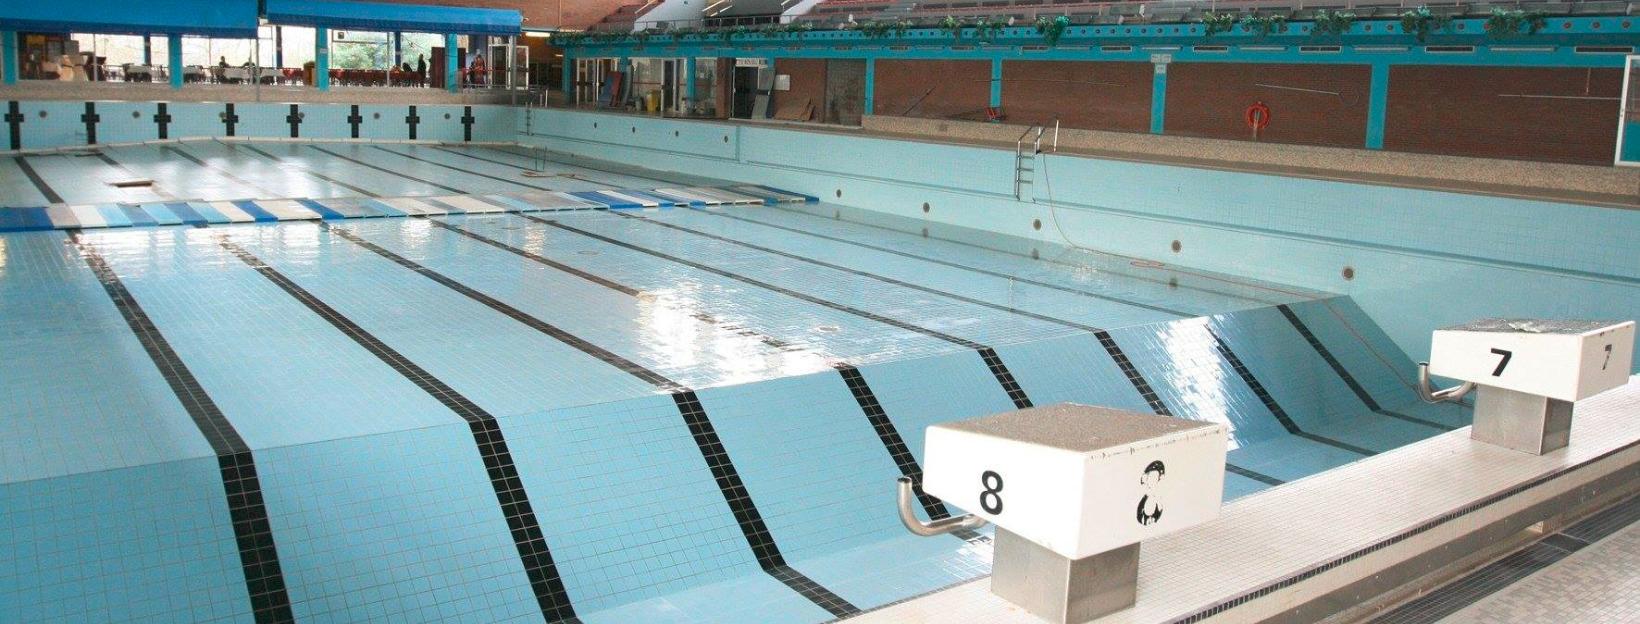 Accès gratuit à la piscine olympique du 2 janvier au 28 février 2022